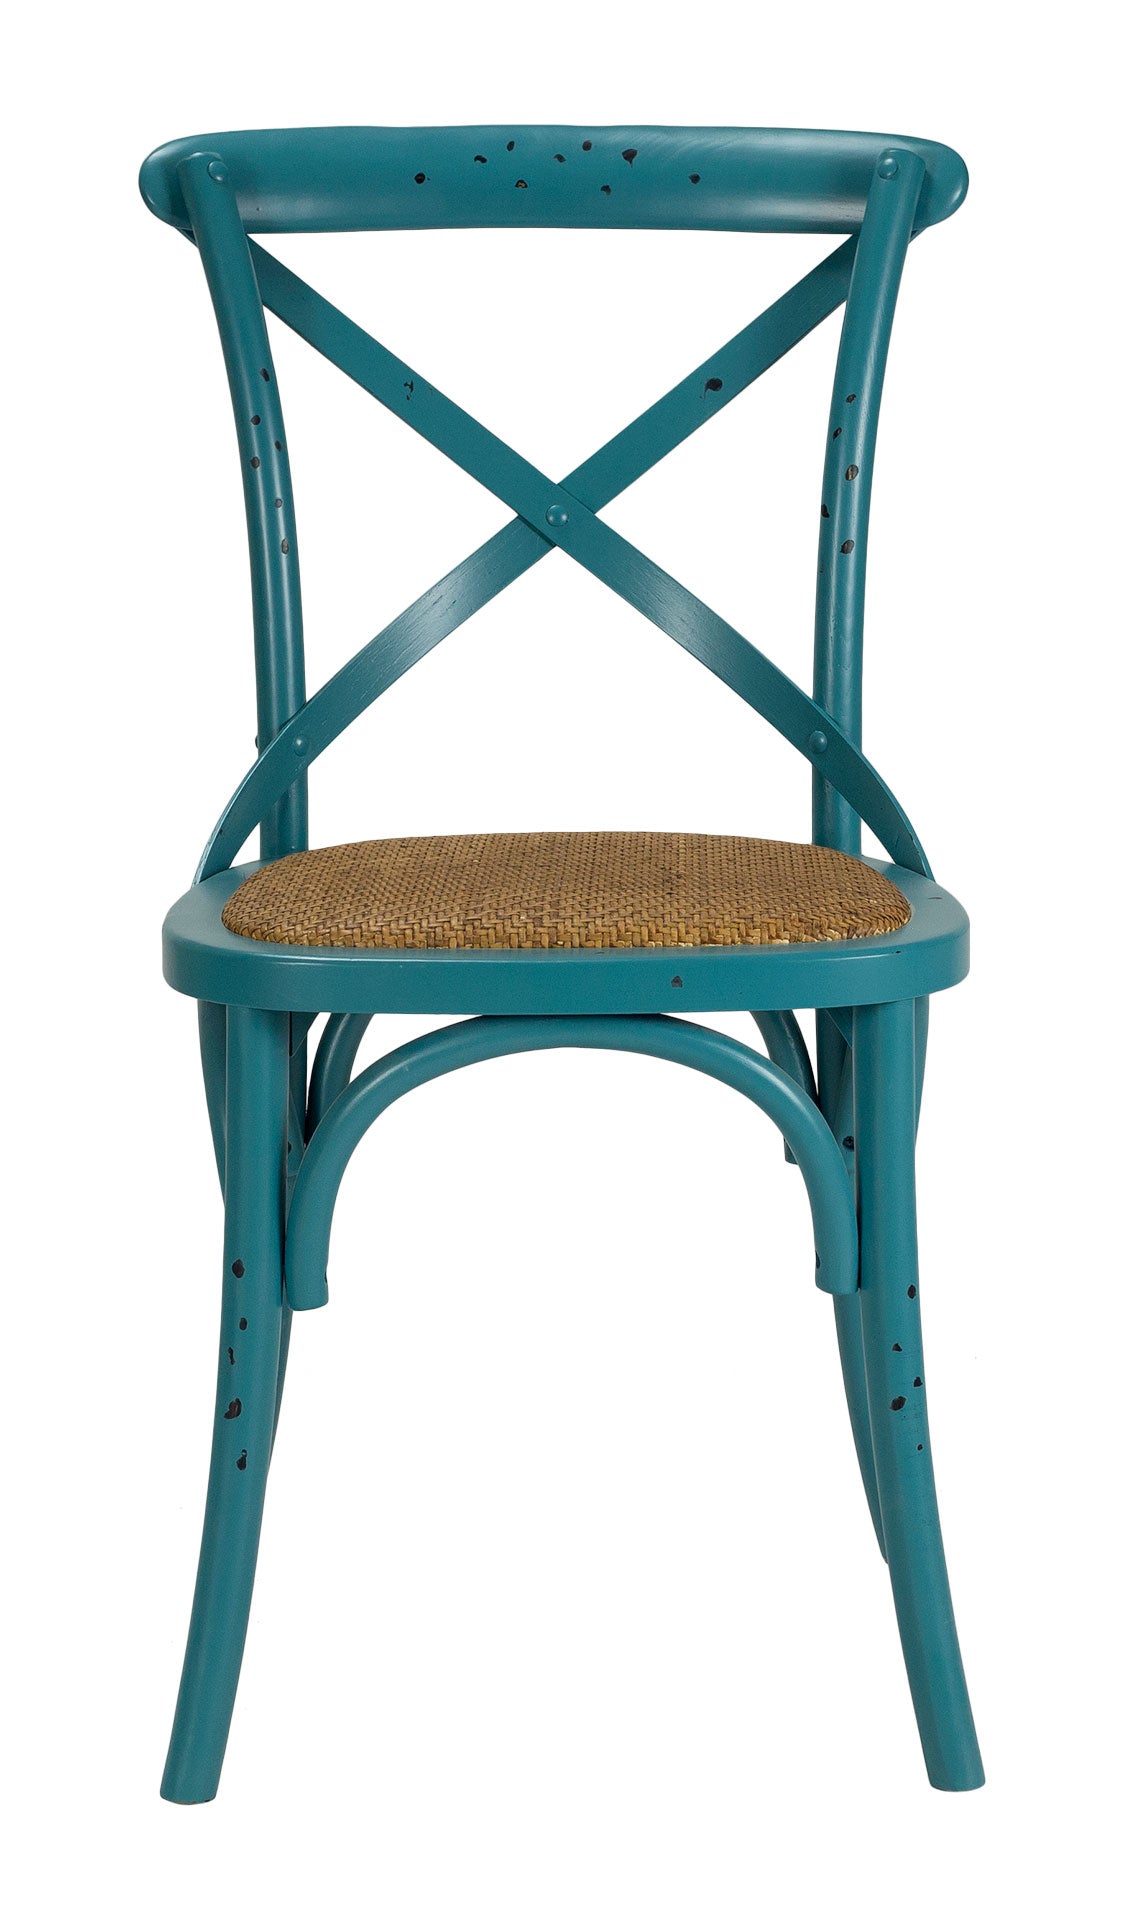 Resistente silla de madera con excelente acabado y variedad de colores